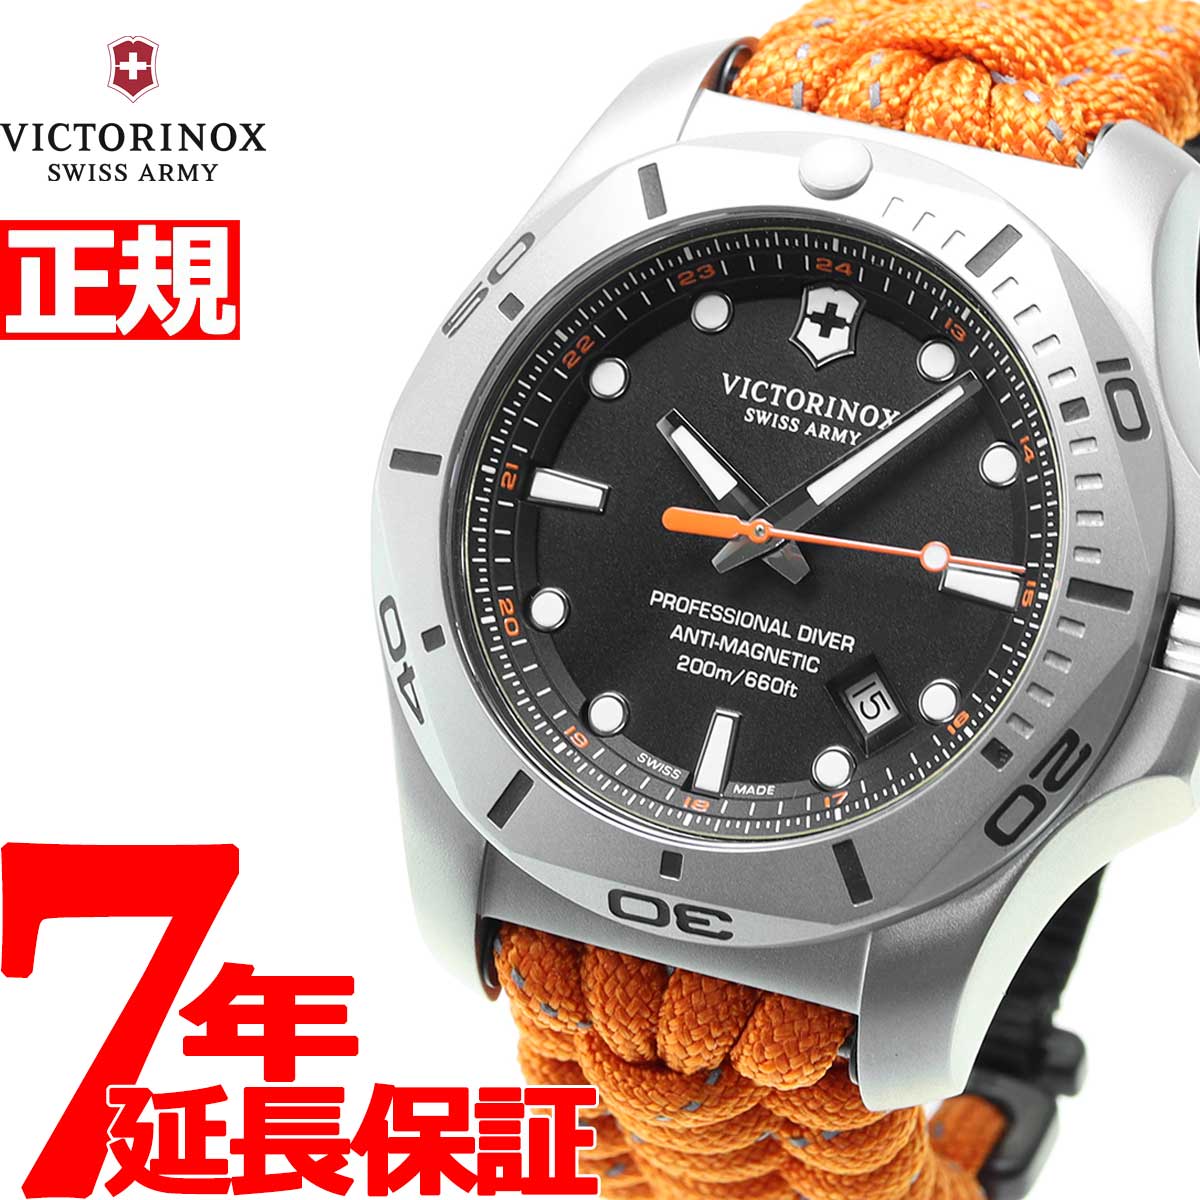 ビクトリノックス 時計 メンズ イノックス VICTORINOX 腕時計 I.N.O.X. プロフェッショナル ダイバー PROFESSIONAL DIVER 241845